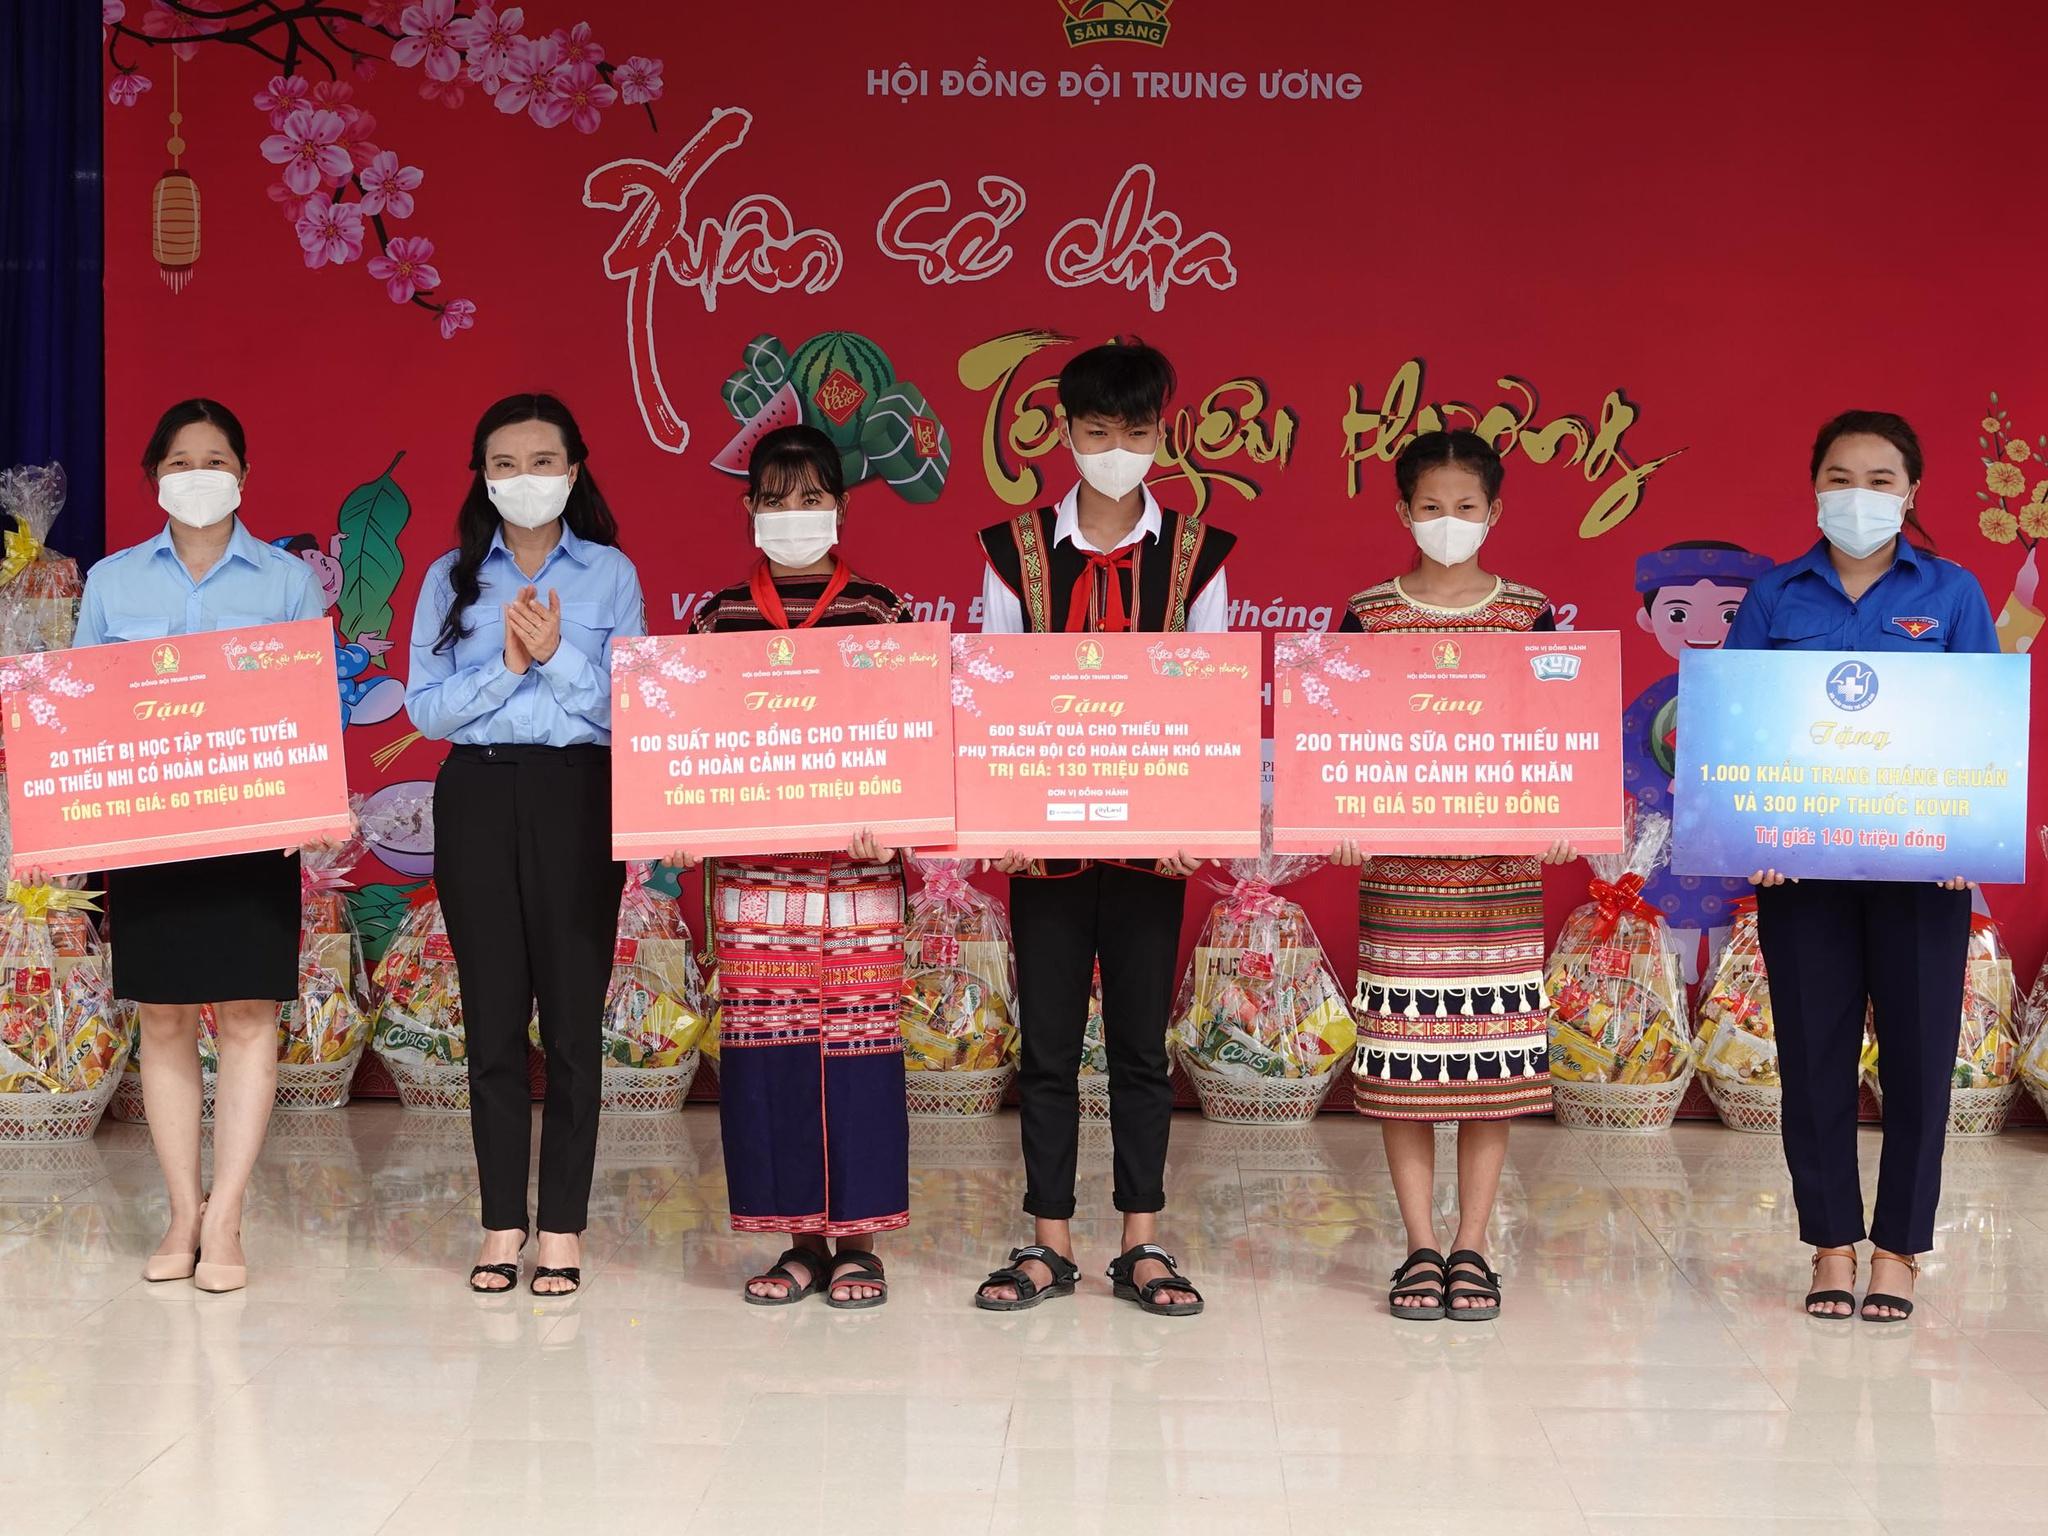 Trao quà tết cho học sinh miền núi Bình Định - ảnh 5